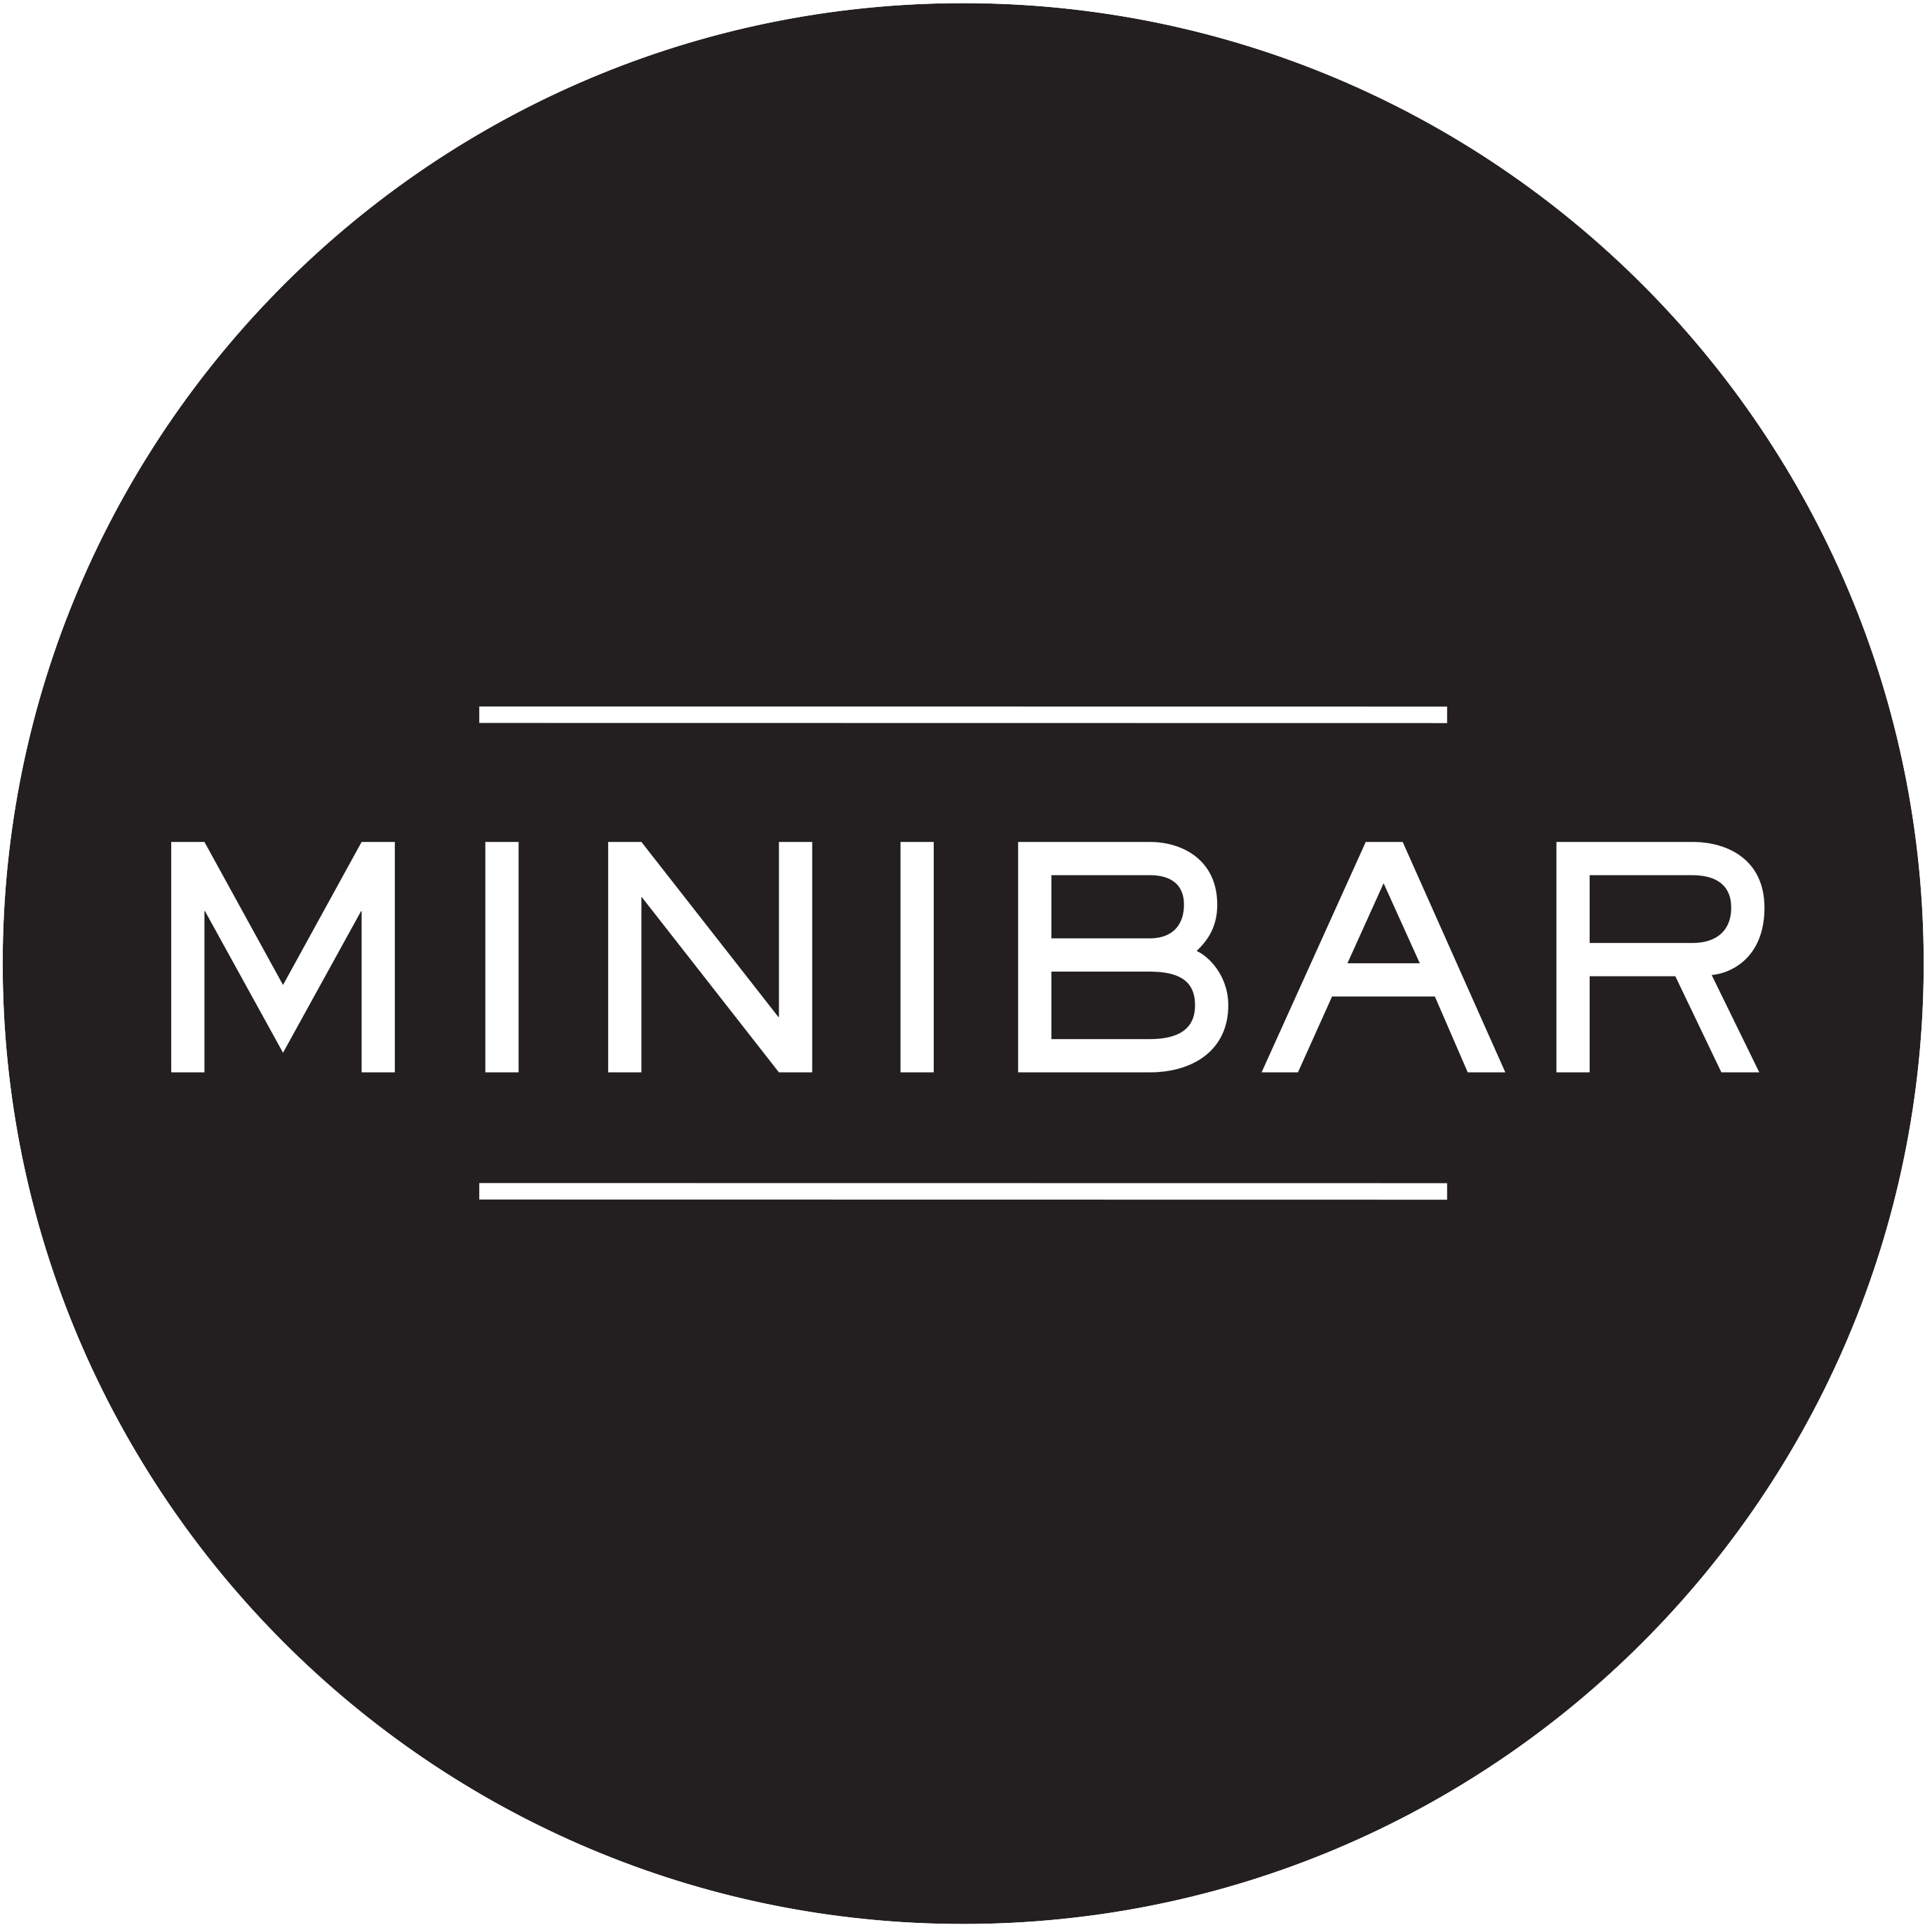 Minibar Logo